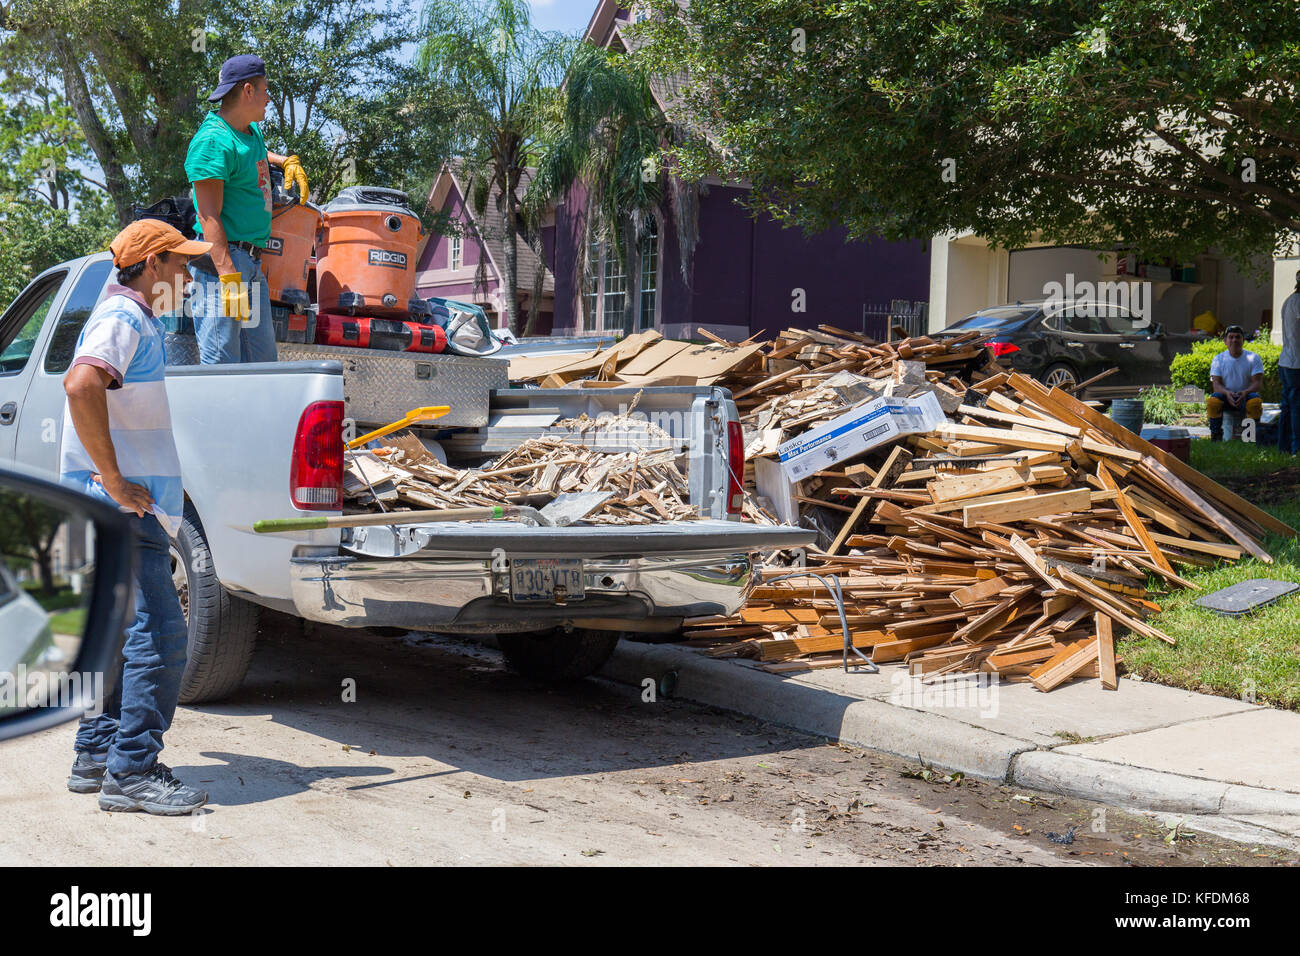 Le nettoyage commence à Houston après l'ouragan Harvey et de fortes inondations. Les entreprises locales aide les résidents de leurs efforts de nettoyage Banque D'Images